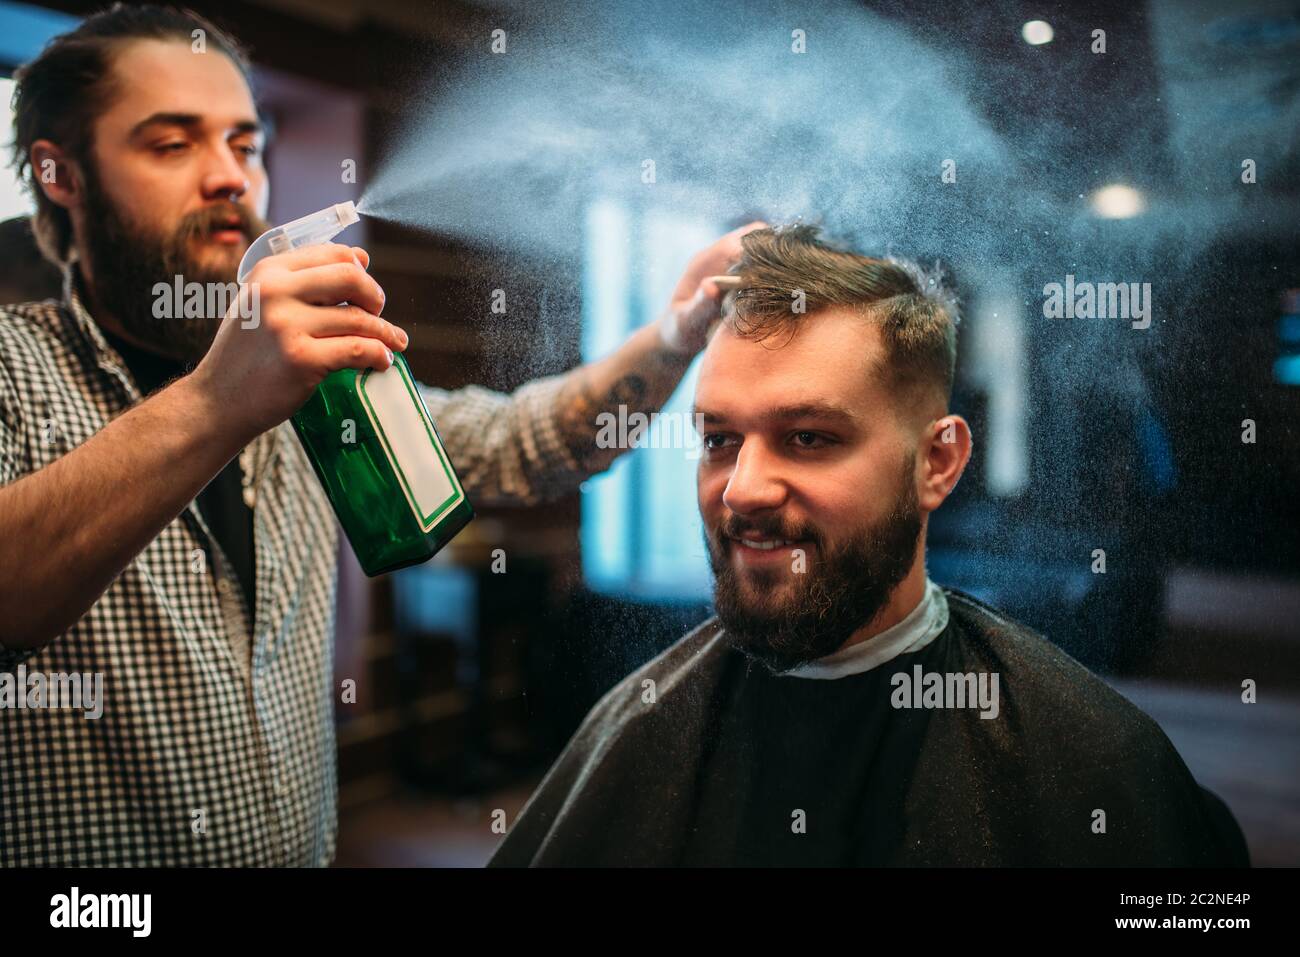 Parrucchiere acqua con spruzzo di capelli il client man in black salon cape. Persona di sesso maschile visita barbiere Foto Stock